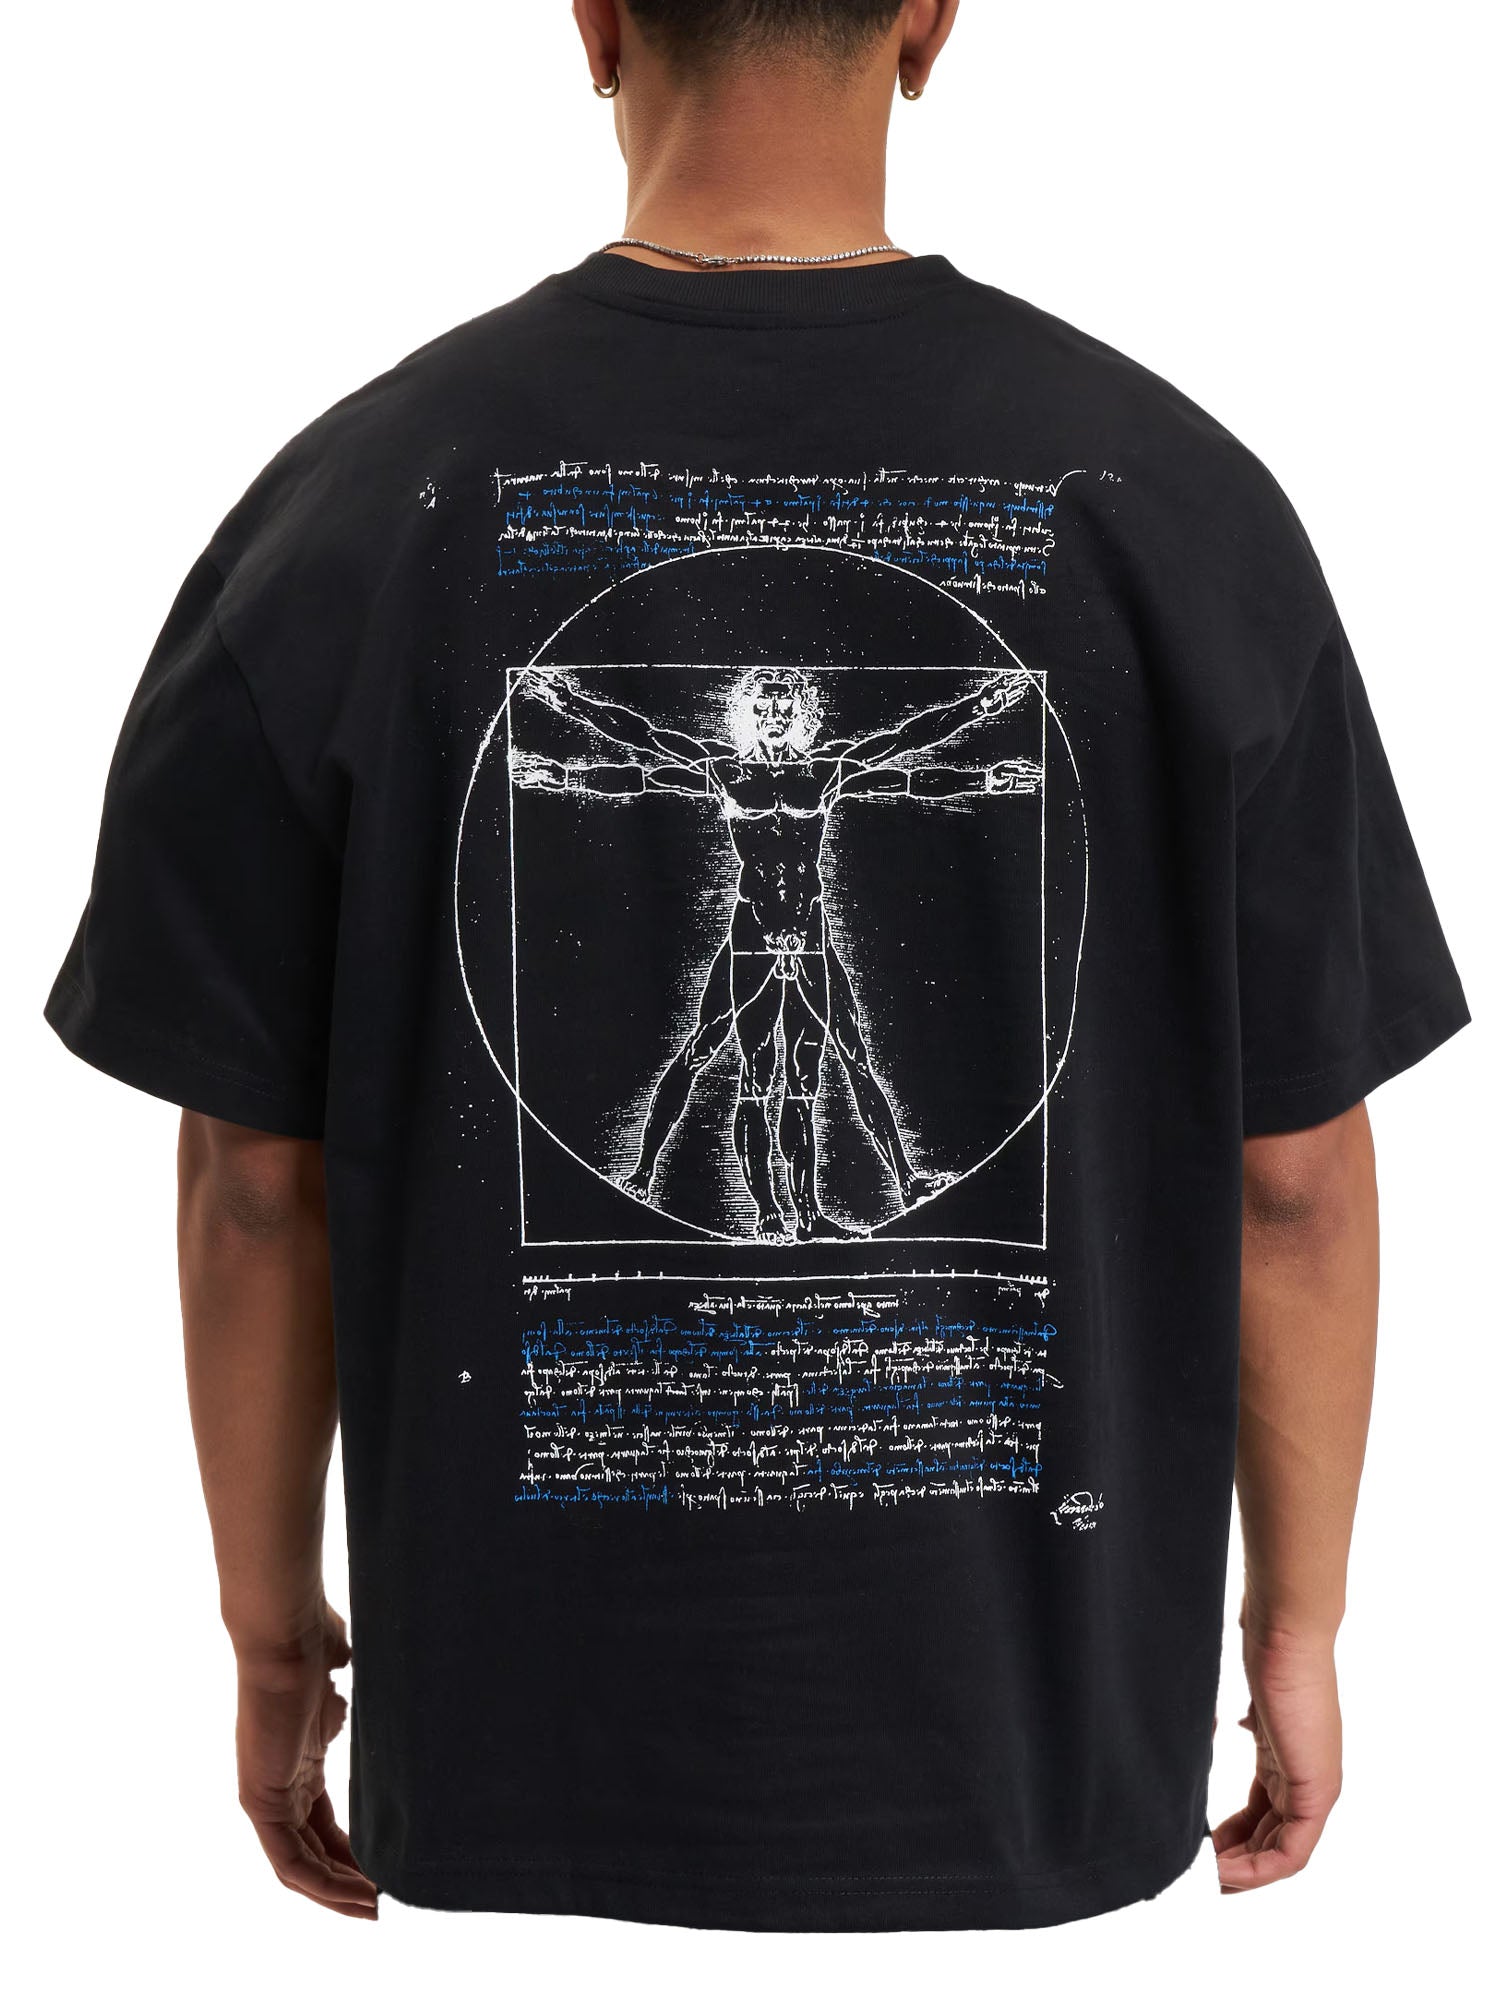 Da Vinci T-Shirt